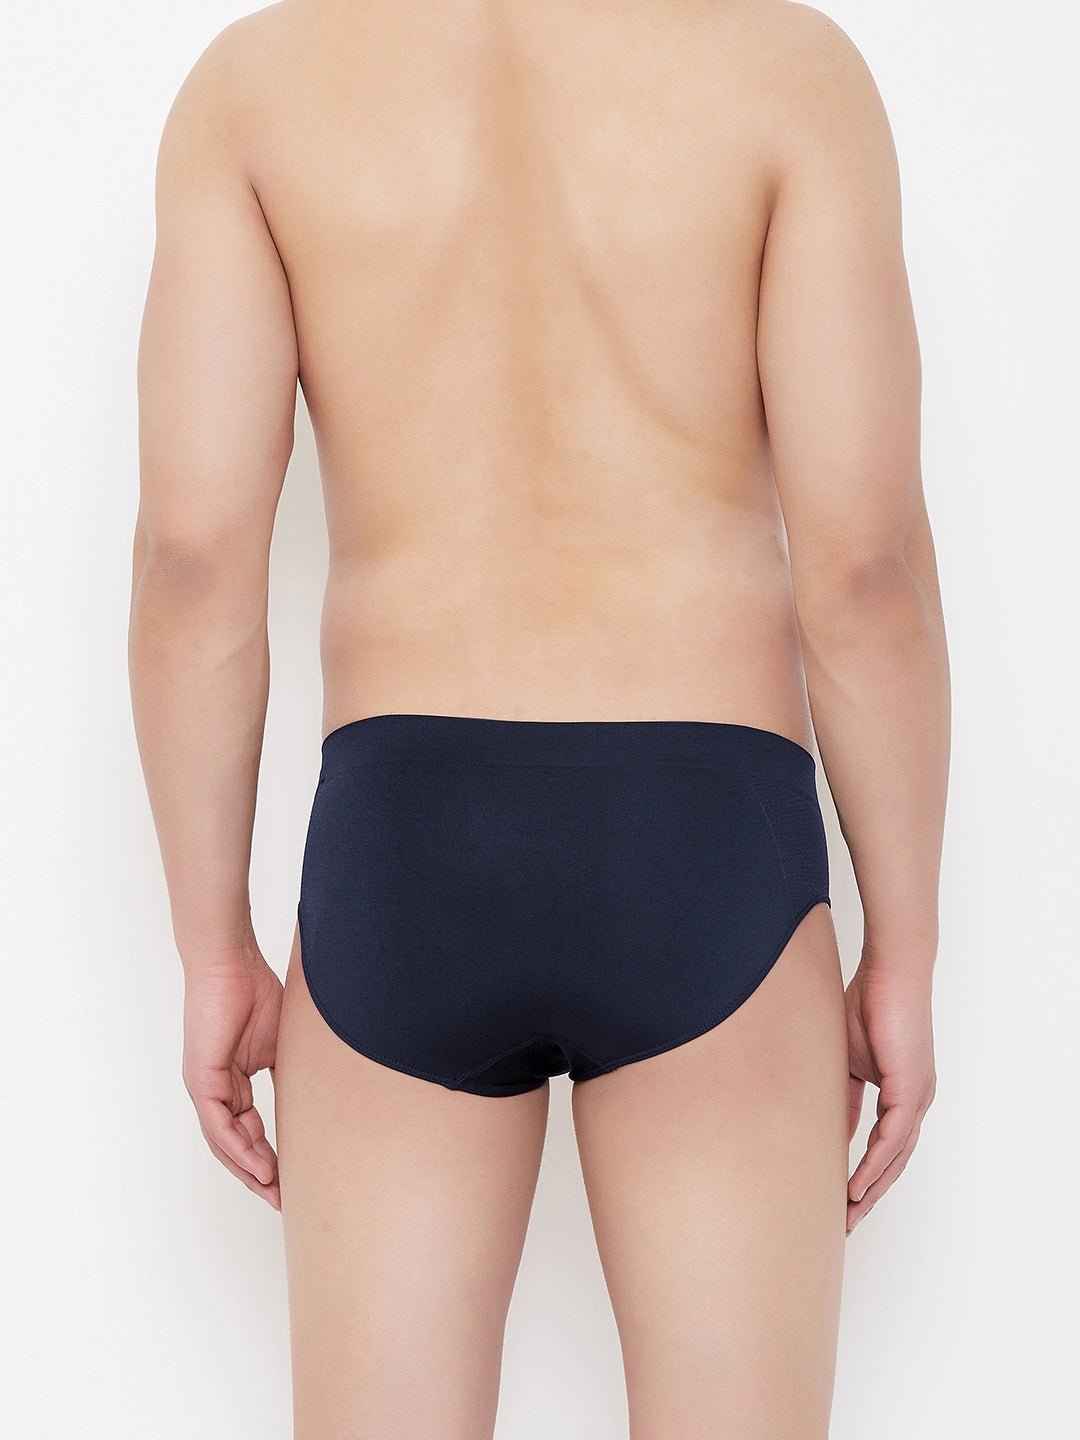 Underwear men's style stripe underwear soft breathable knickers short briefs  bd15897